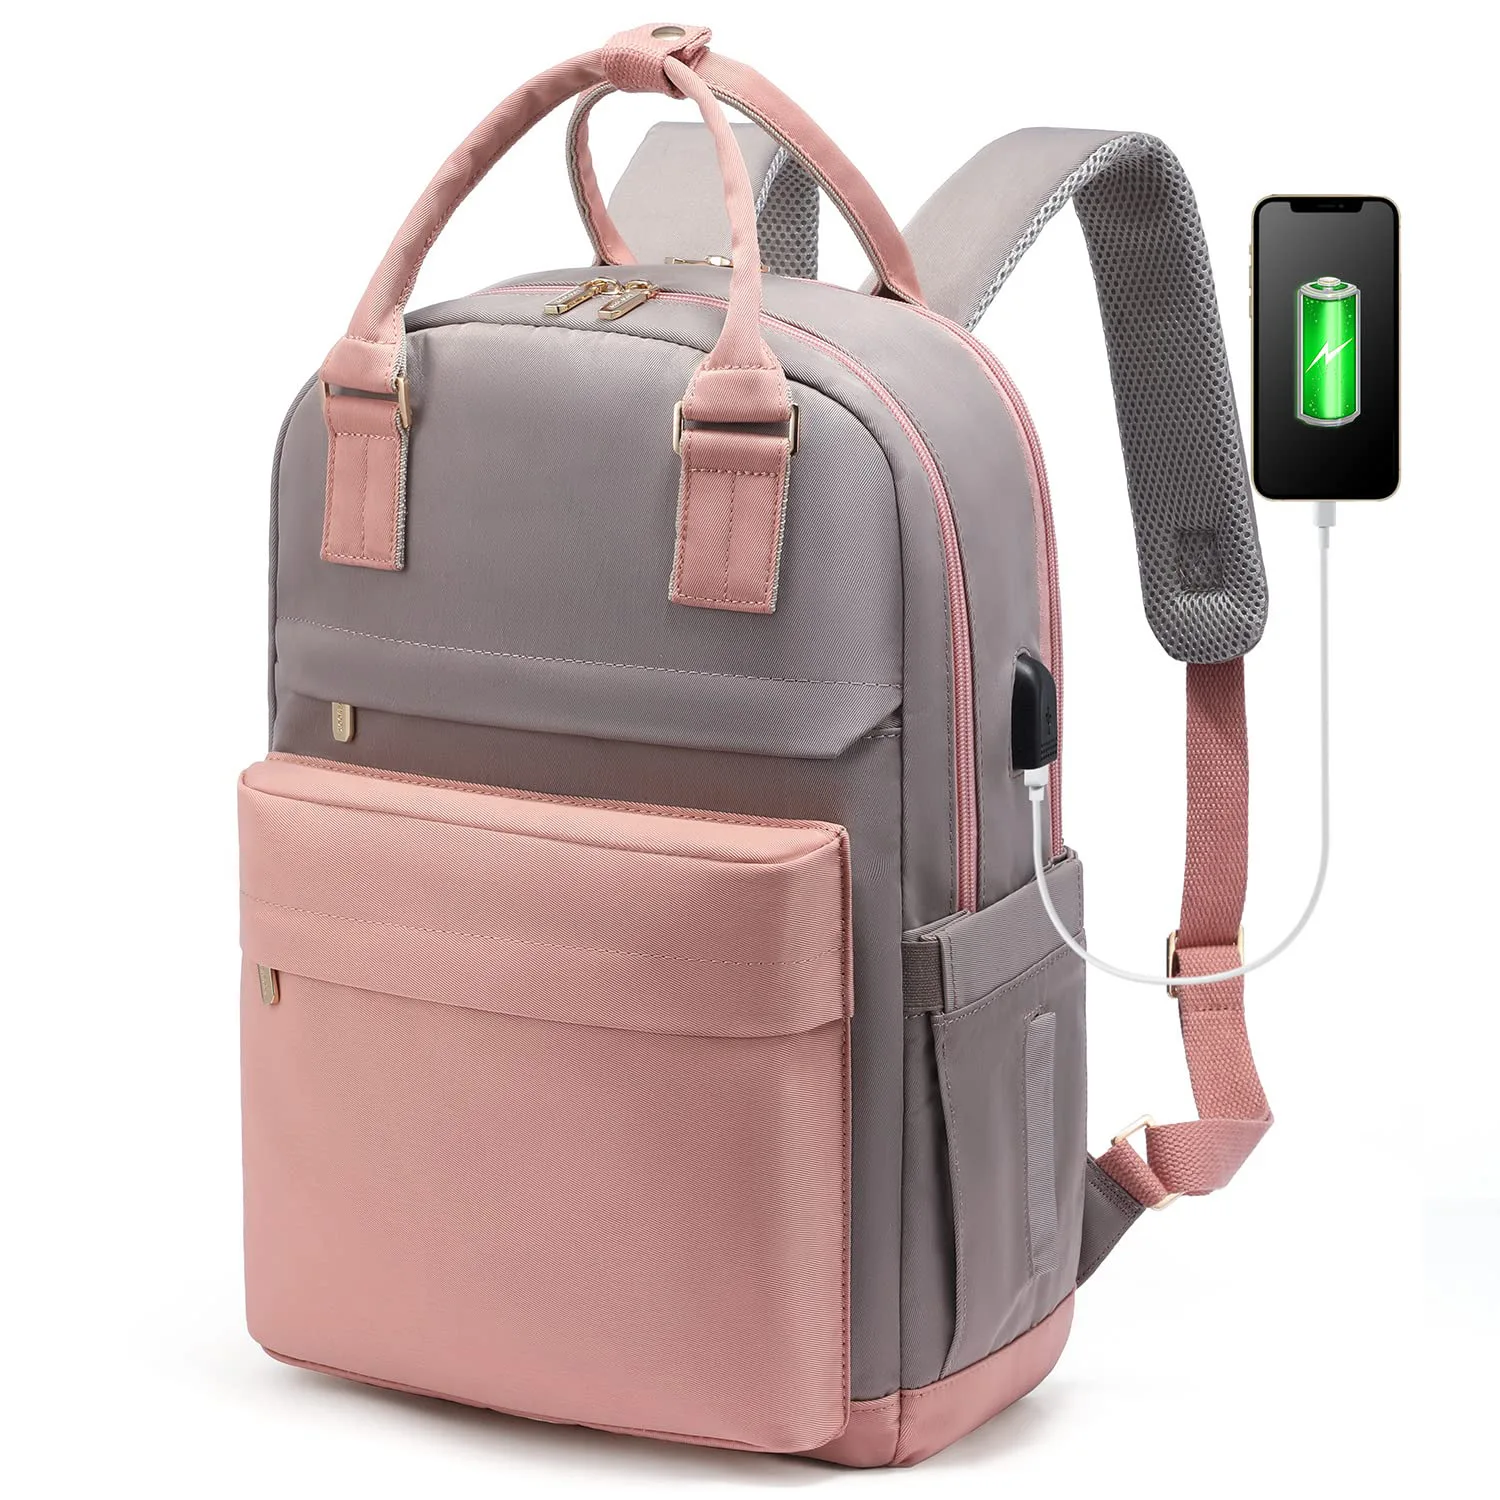 Новый женский модный рюкзак большой емкости с USB-портом для зарядки, рюкзак для ноутбука, портативная дорожная сумка, школьный ранец 1